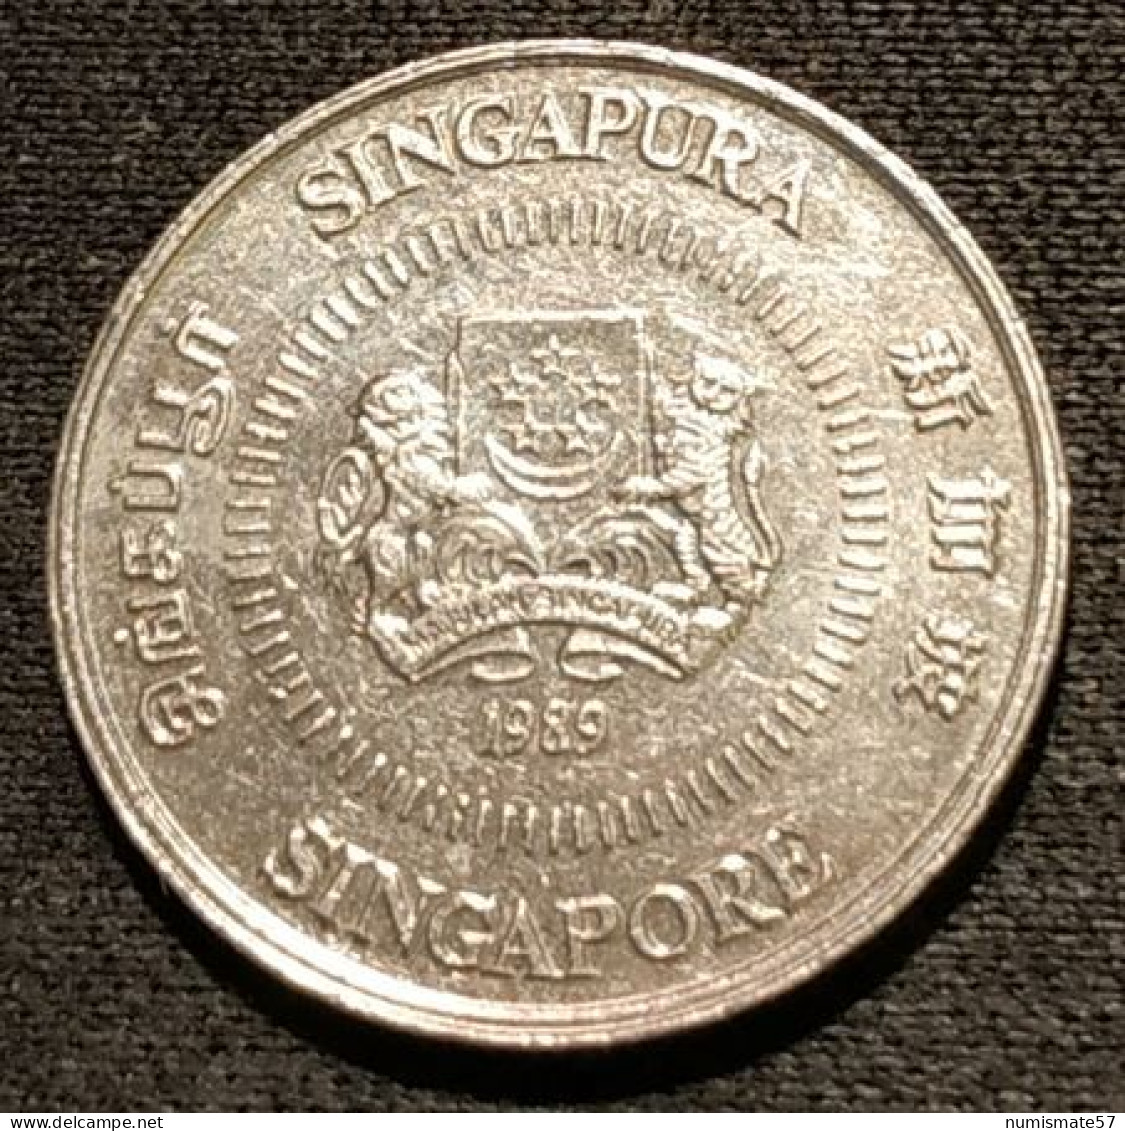 SINGAPOUR - SINGAPORE - 10 CENTS 1989 - KM 51 - ( Blason Haut ) - Singapore